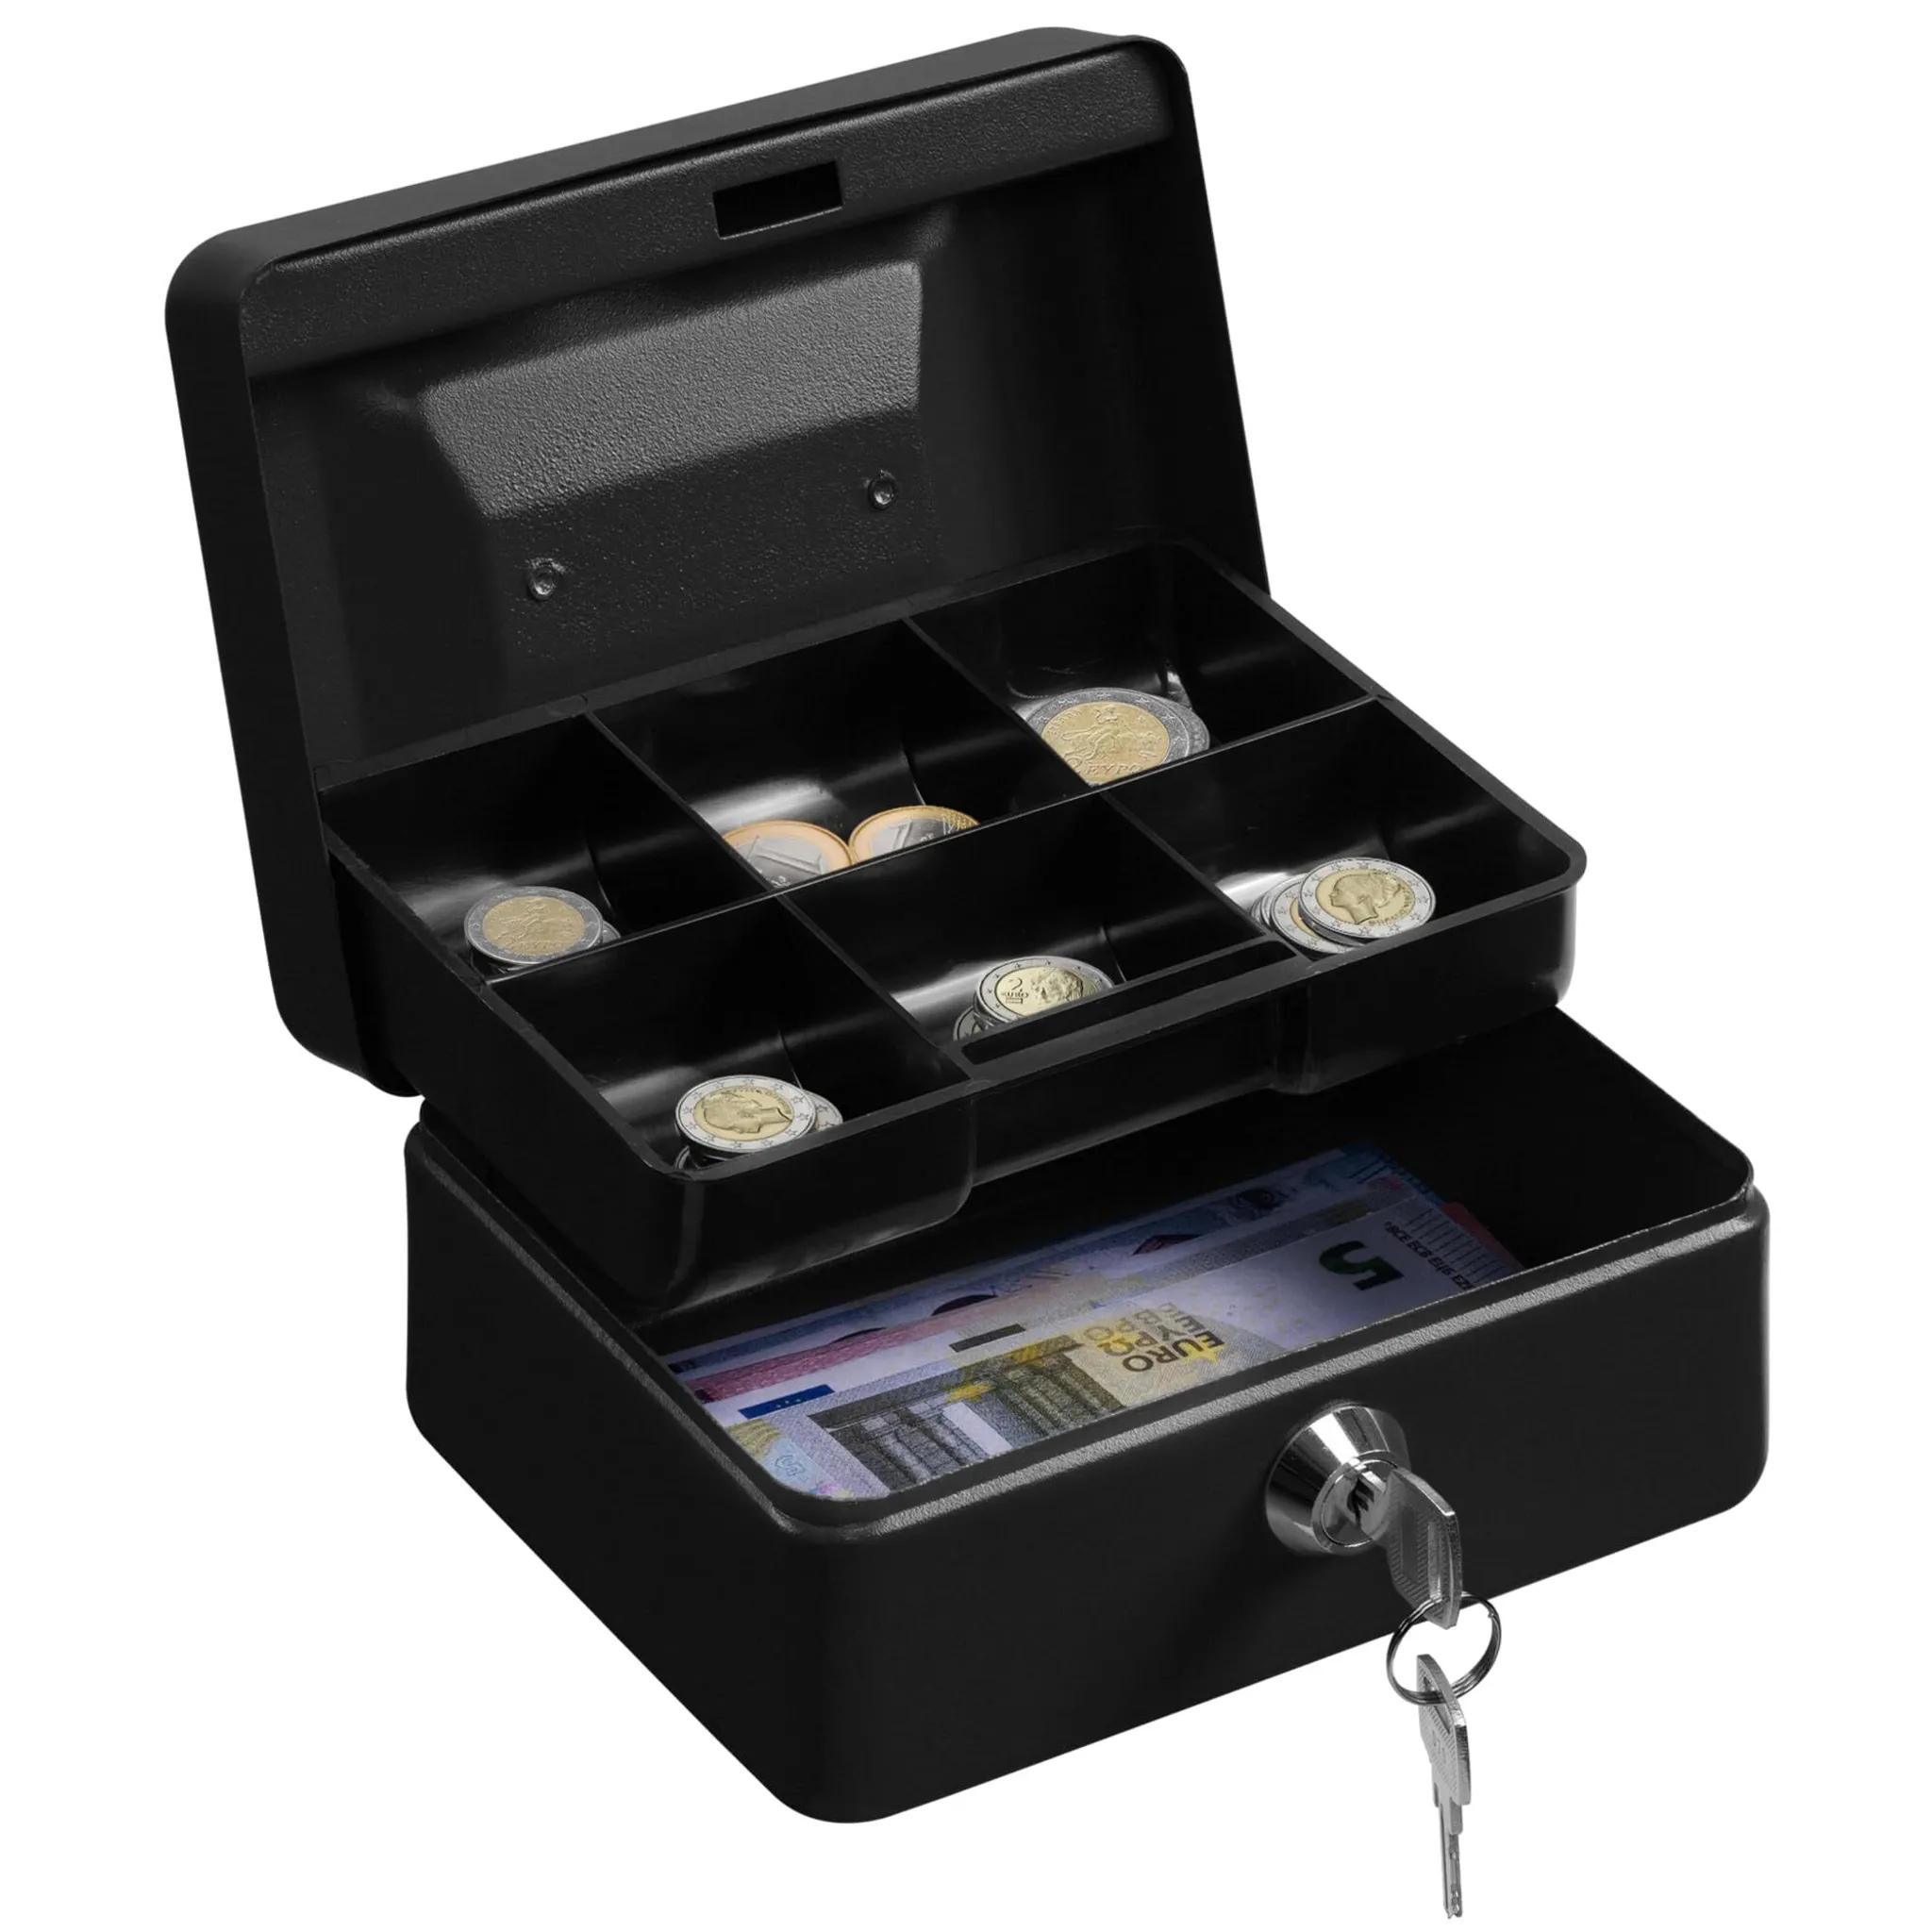 ACROPAQ Geldkassette abschließbar - Kasse mit Münzzählbrett, Groß 24 x 30 x  9 cm - Abschließbare Box, Geldkasse, Geldkoffer geeignet für